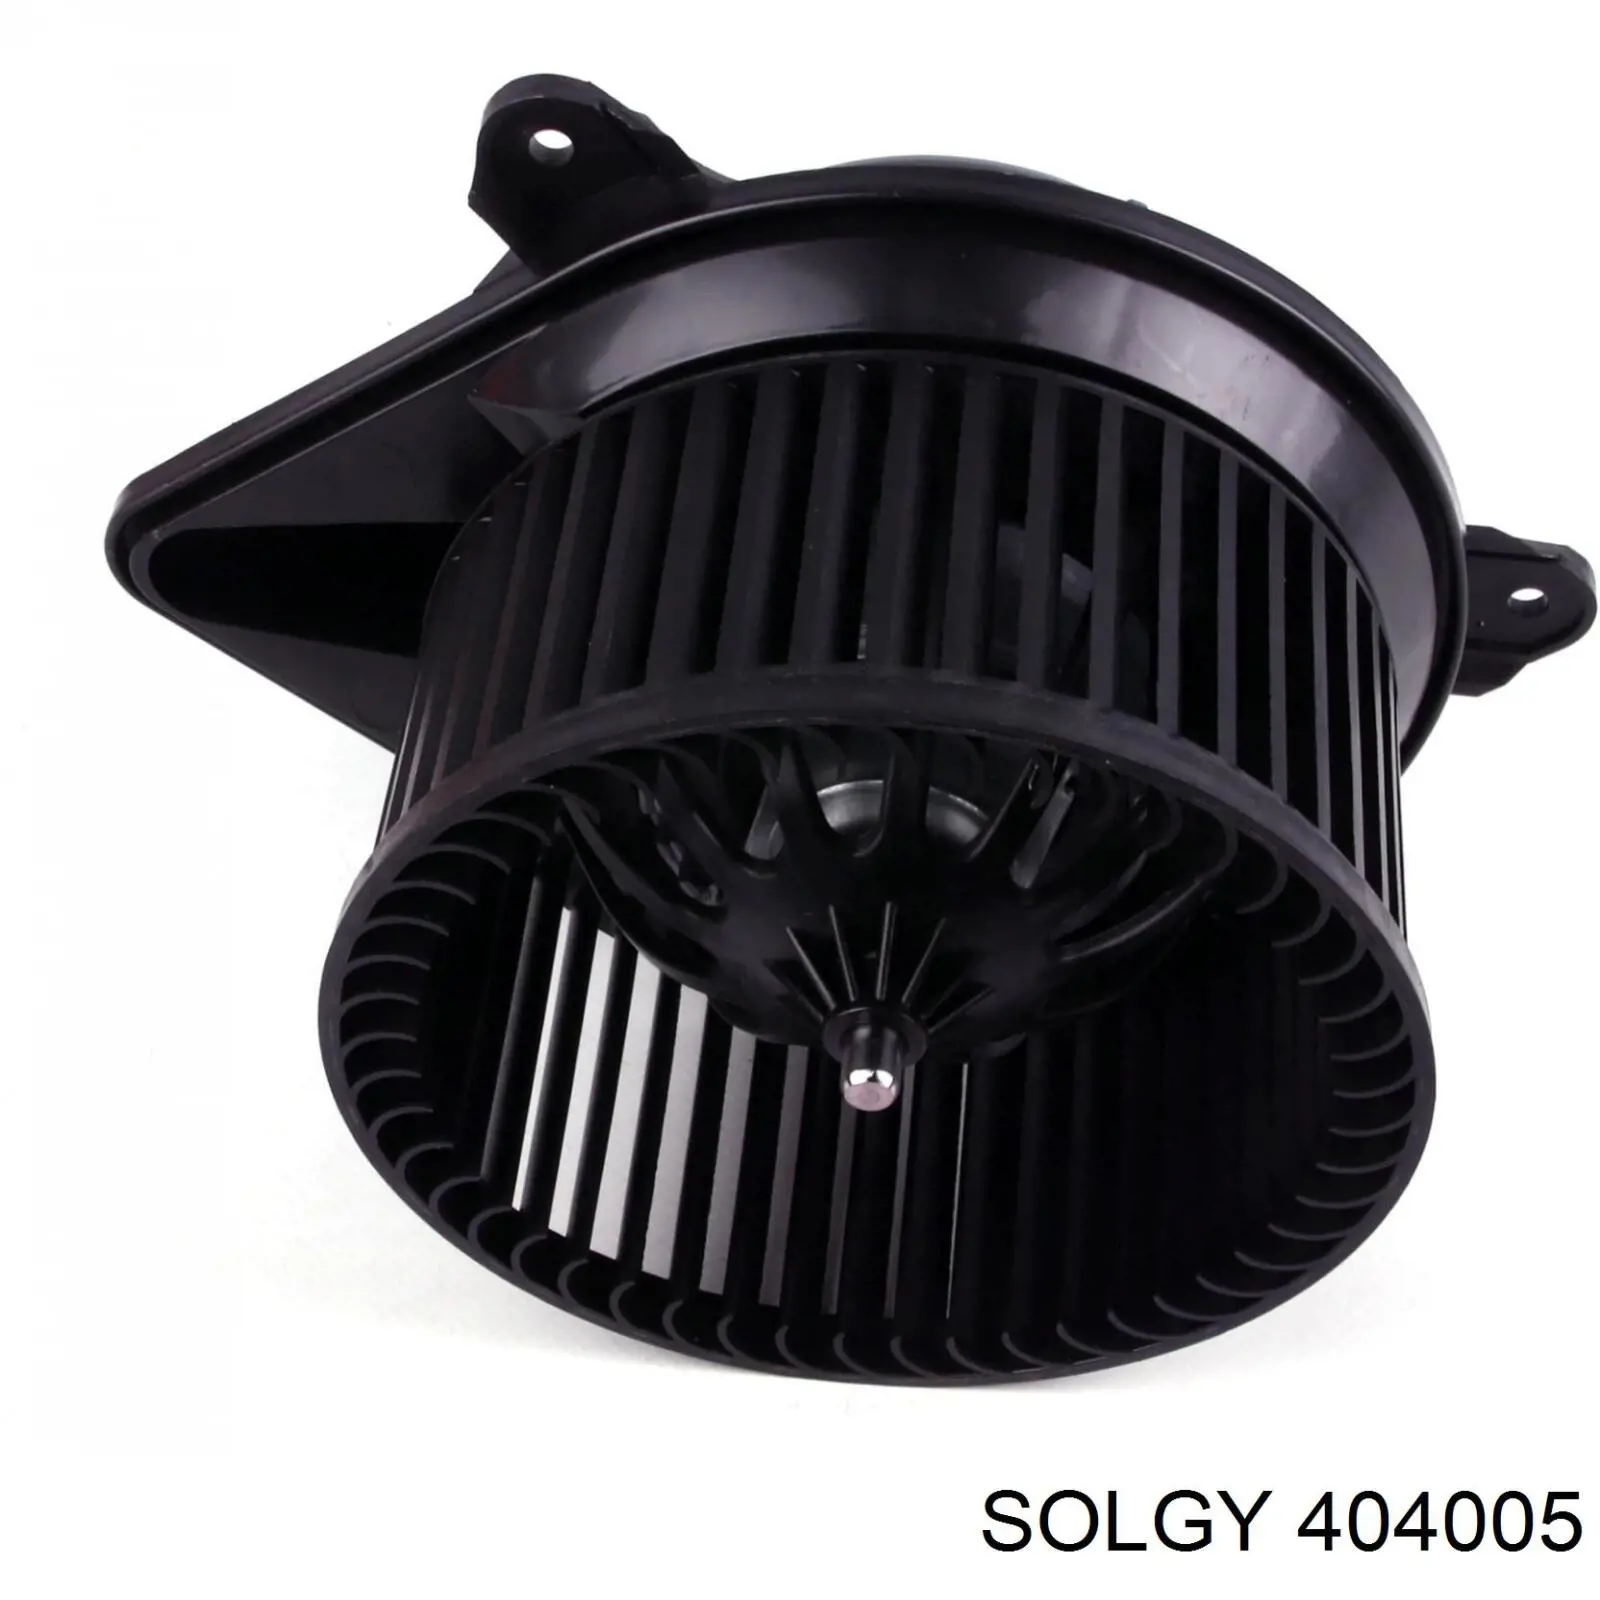 404005 Solgy motor eléctrico, ventilador habitáculo